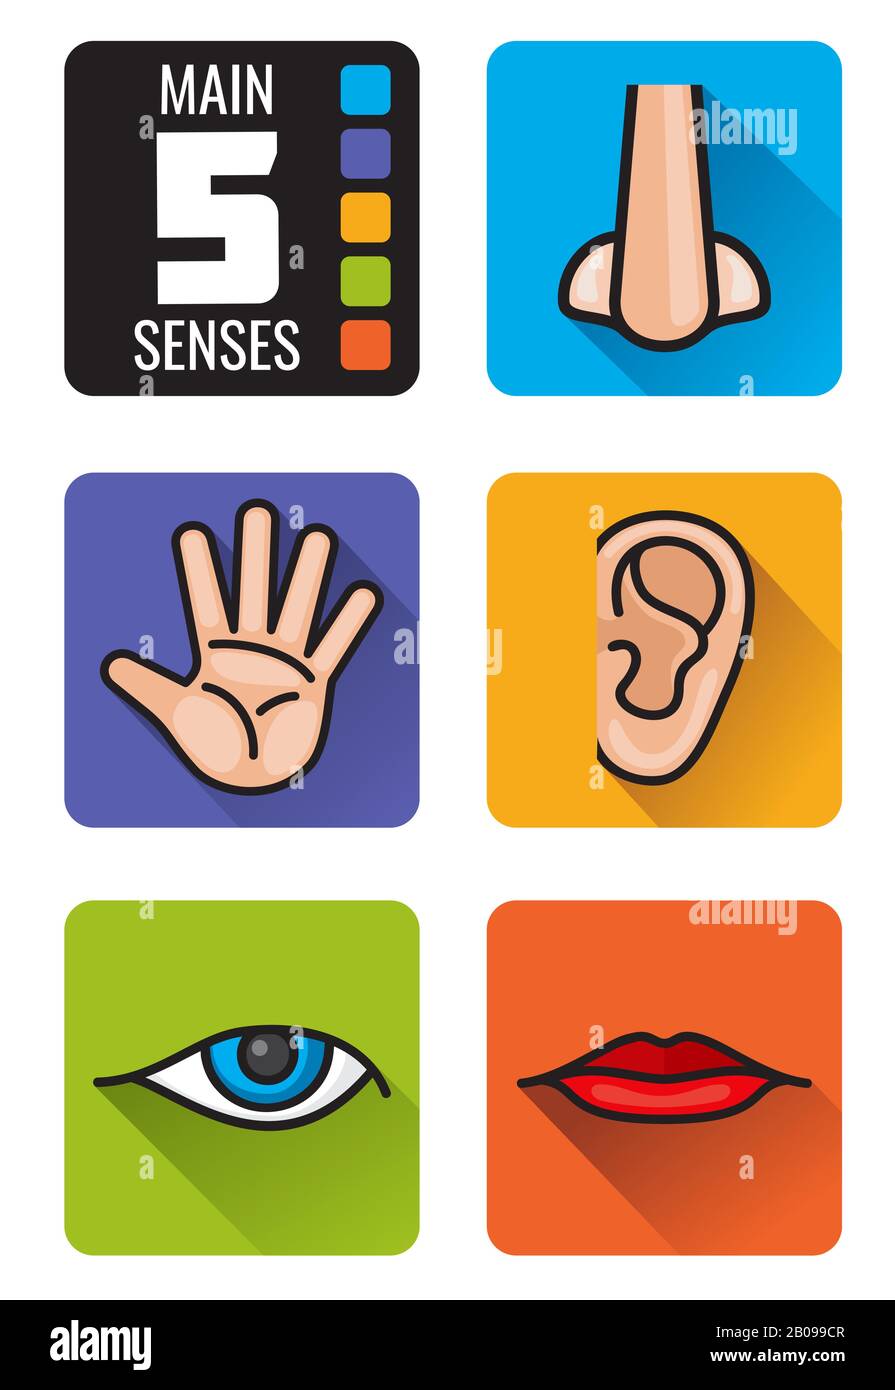 Fünf Sinne, Nase, Hand, Mund, Auge, Ohrenvektor-Symbole werden gesetzt. Satz von menschlichen Sinnen riecht nach Anblick, Hörgeschmack und Touch-Illustration Stock Vektor